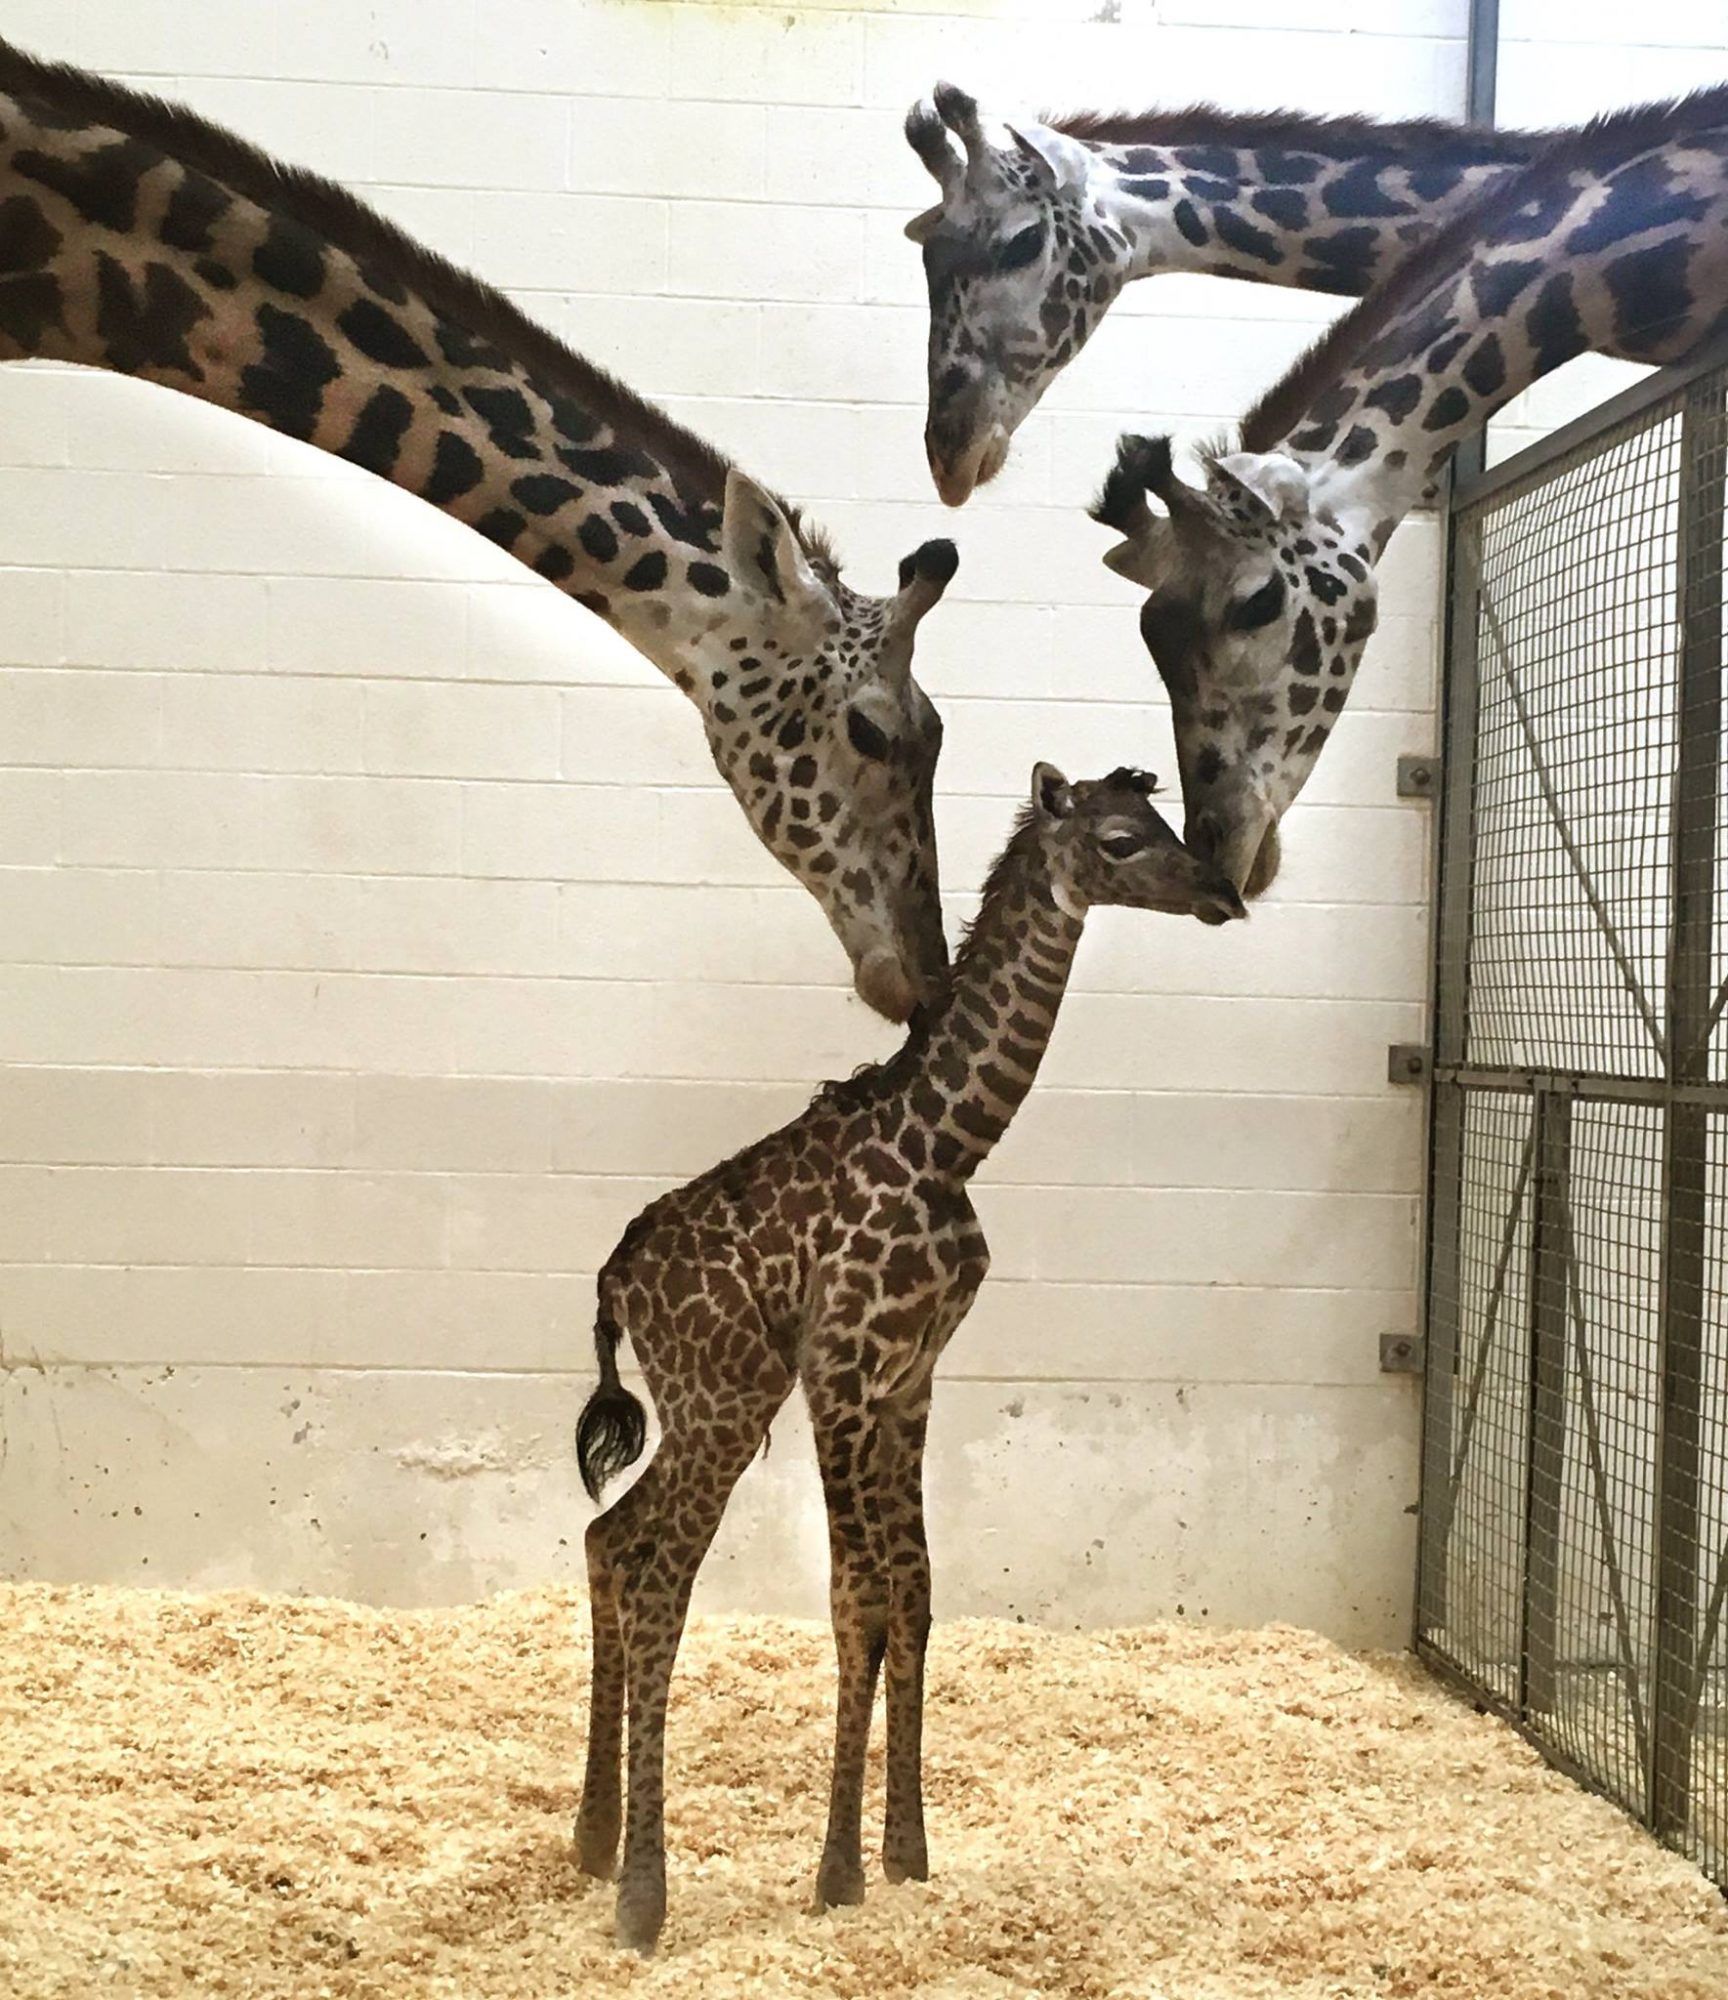 Katso tämä vauva kirahvi yrittää ottaa ensimmäiset askeleensa